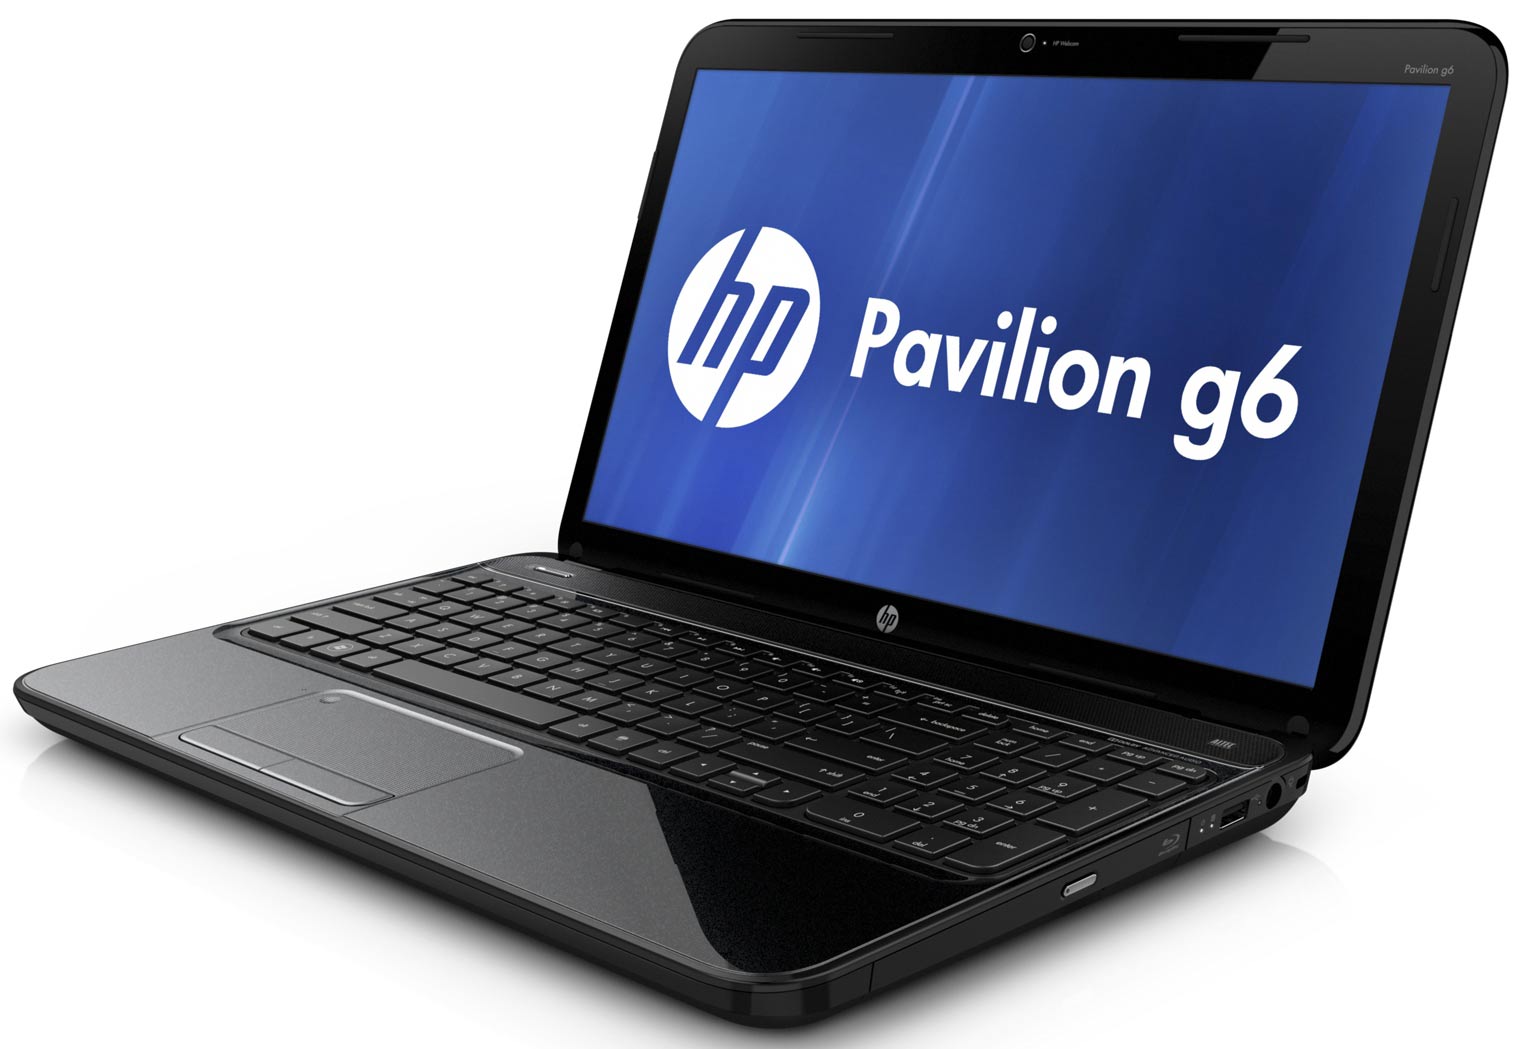 HP Pavilion g6 2302sr